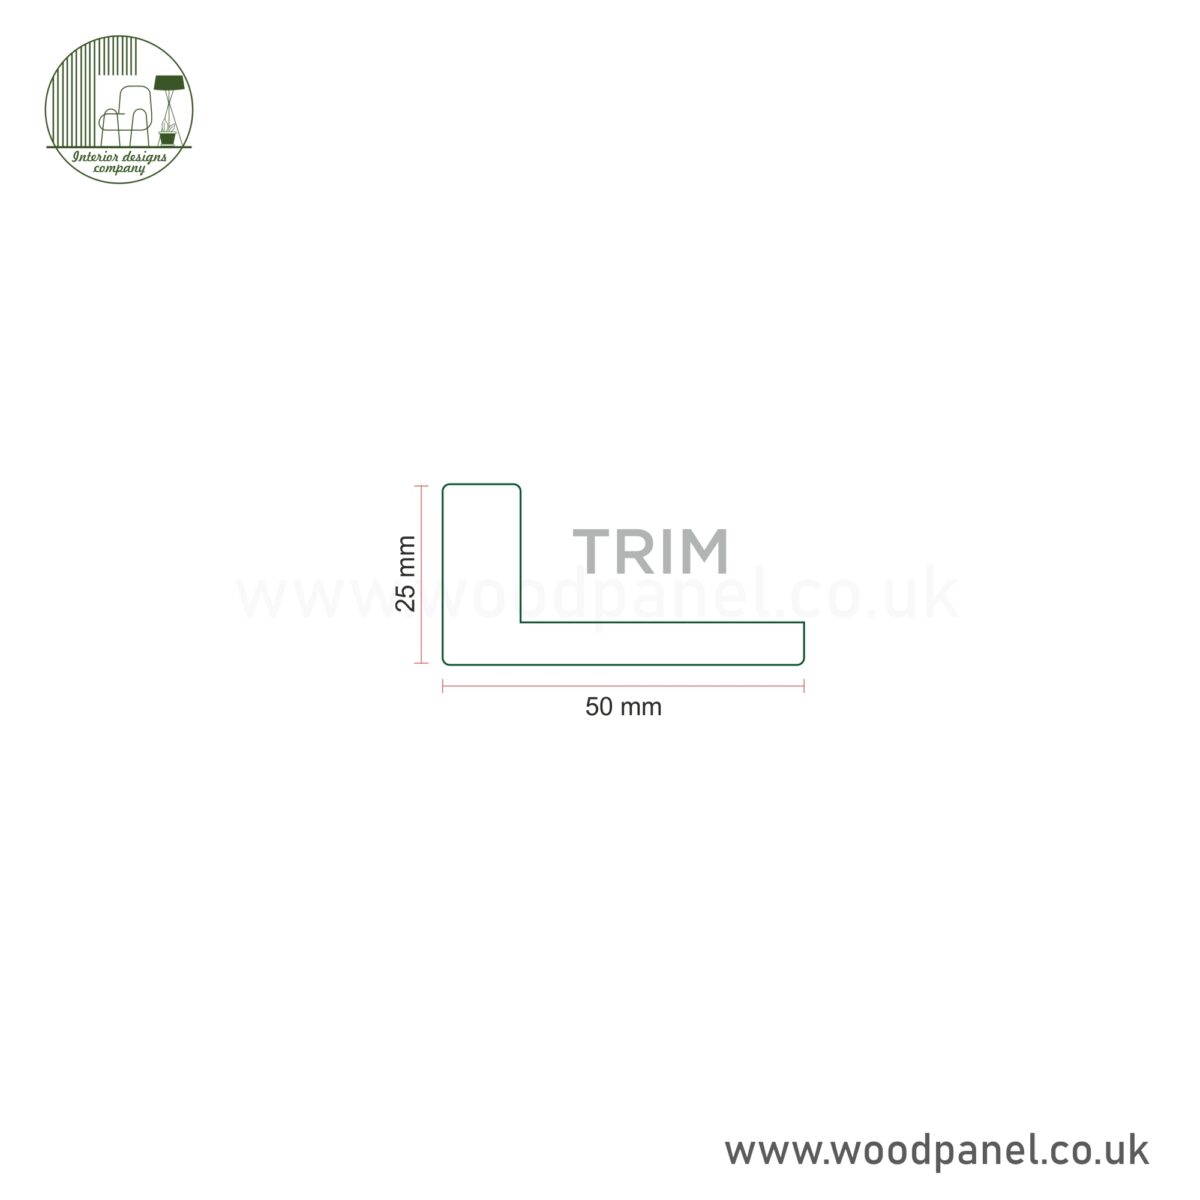 Trim 1 TOP/BOTTOM TRIM CAP U899 BLACK SOFT TOUCH